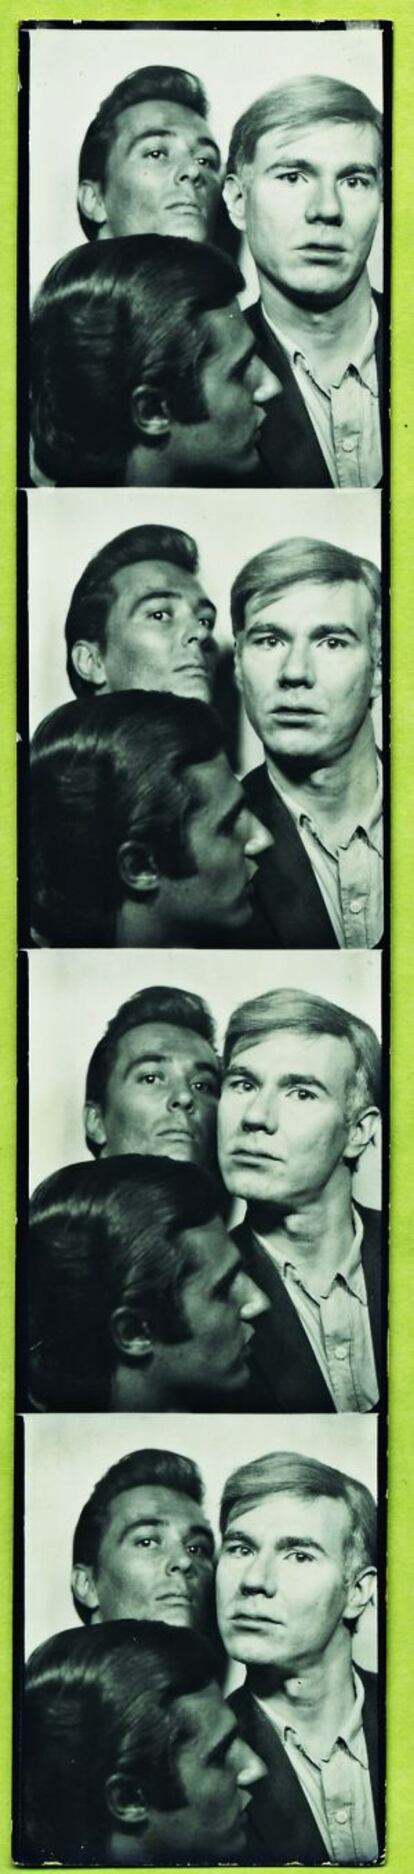 Fotomatón de Warhol junto a Gerard Malanga y Philip Fagan en 1965